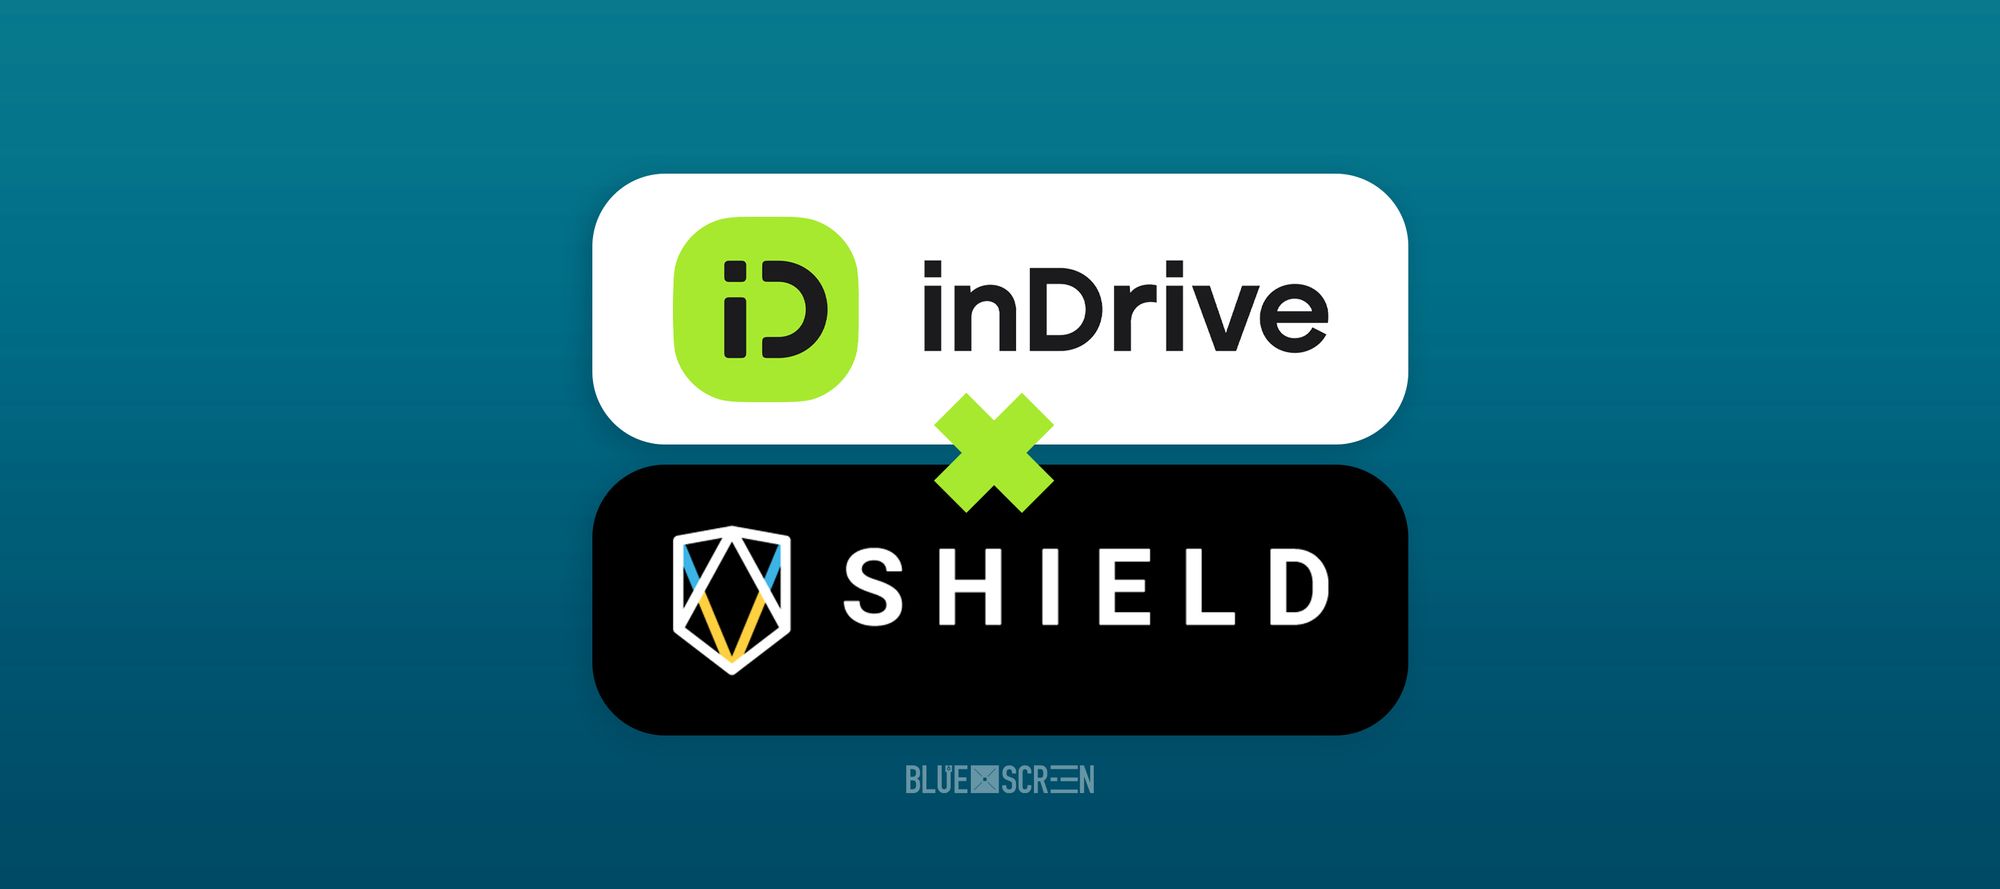 inDrive стал партнером SHIELD, чтобы бороться с мошенниками